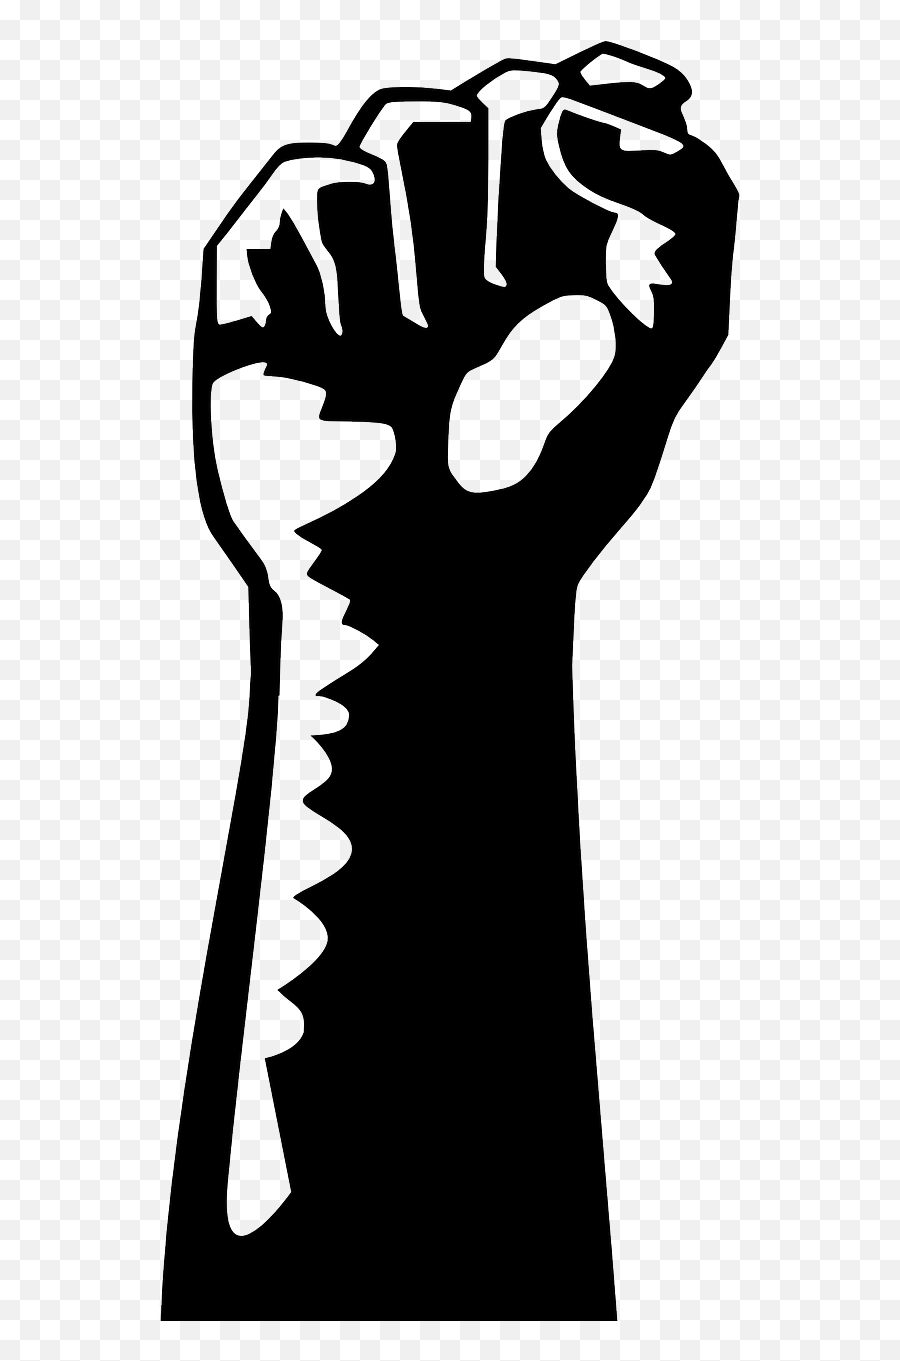 Fist Hand Worker Class Working - Workers Fist Emoji,Black Fist Bump Emoji